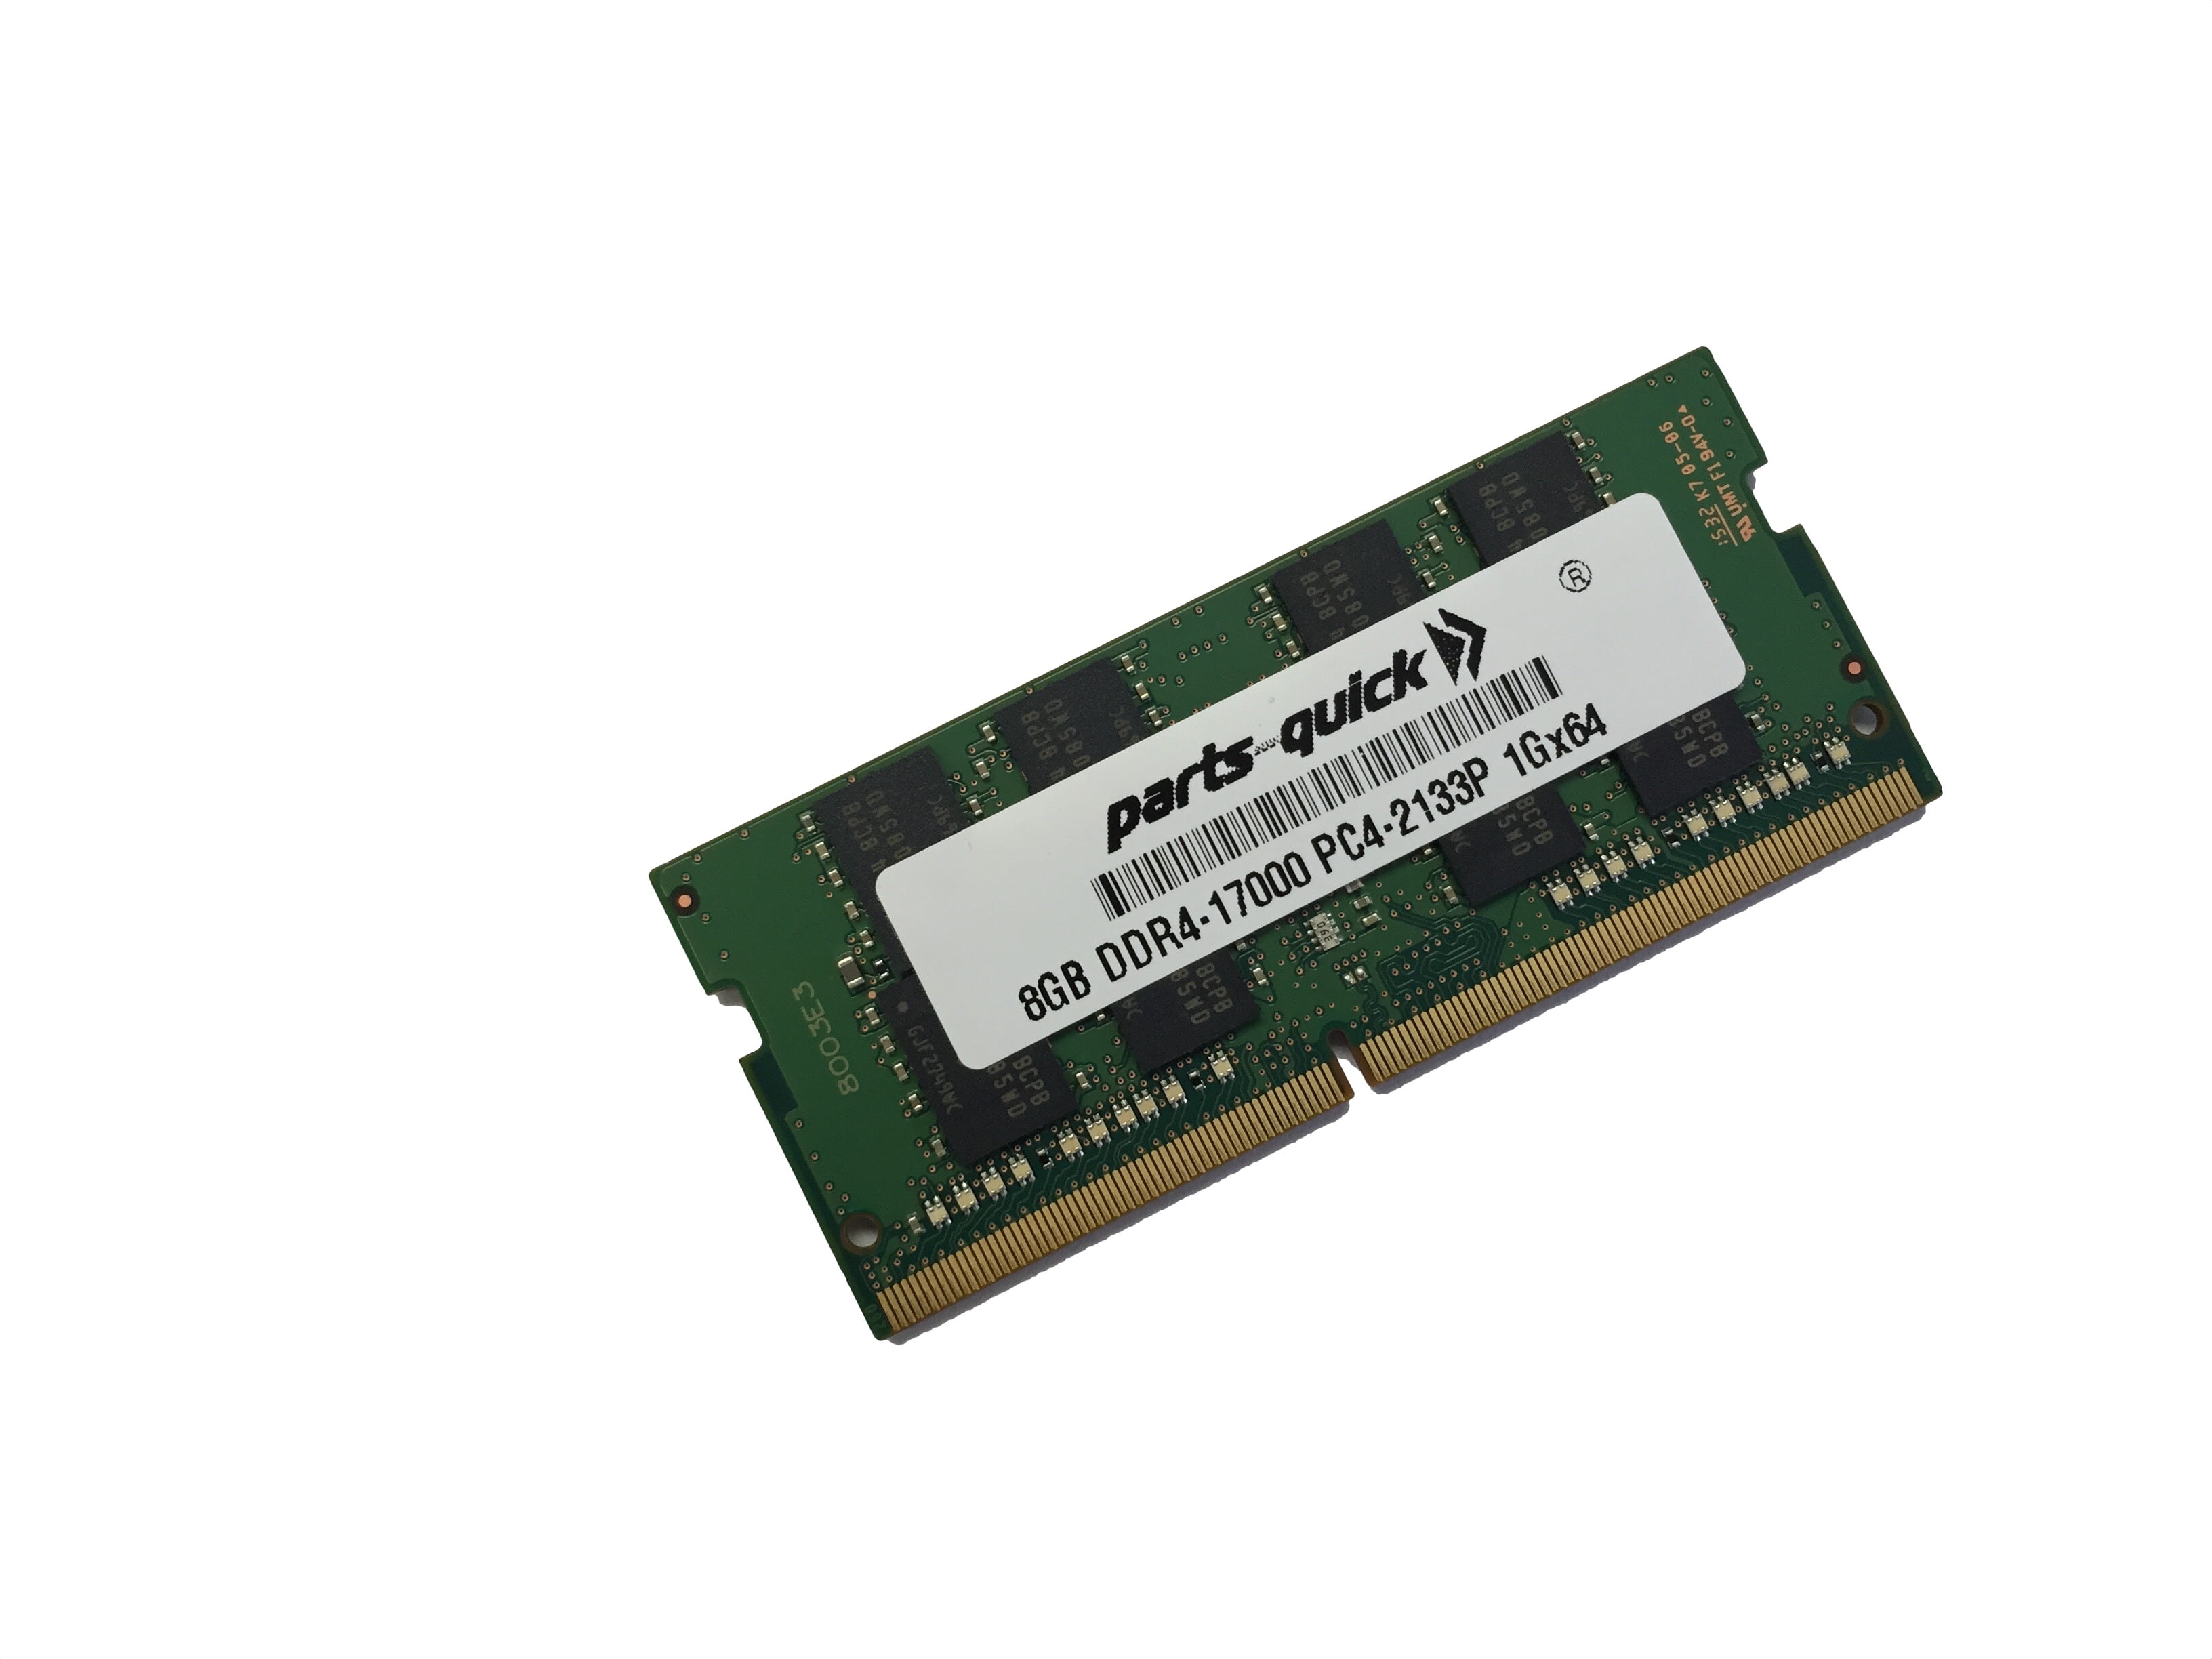 milla nautica Juntar origen 8GB DDR4 RAM Memory Upgrade for MSI Apache, Apache Pro, Leopard, Leopard  Pro, Ghost, Ghost Pro, Dominator, Dominator Pro, Titan, Titan SLI Notebook  (PARTS-QUICK) - Walmart.com